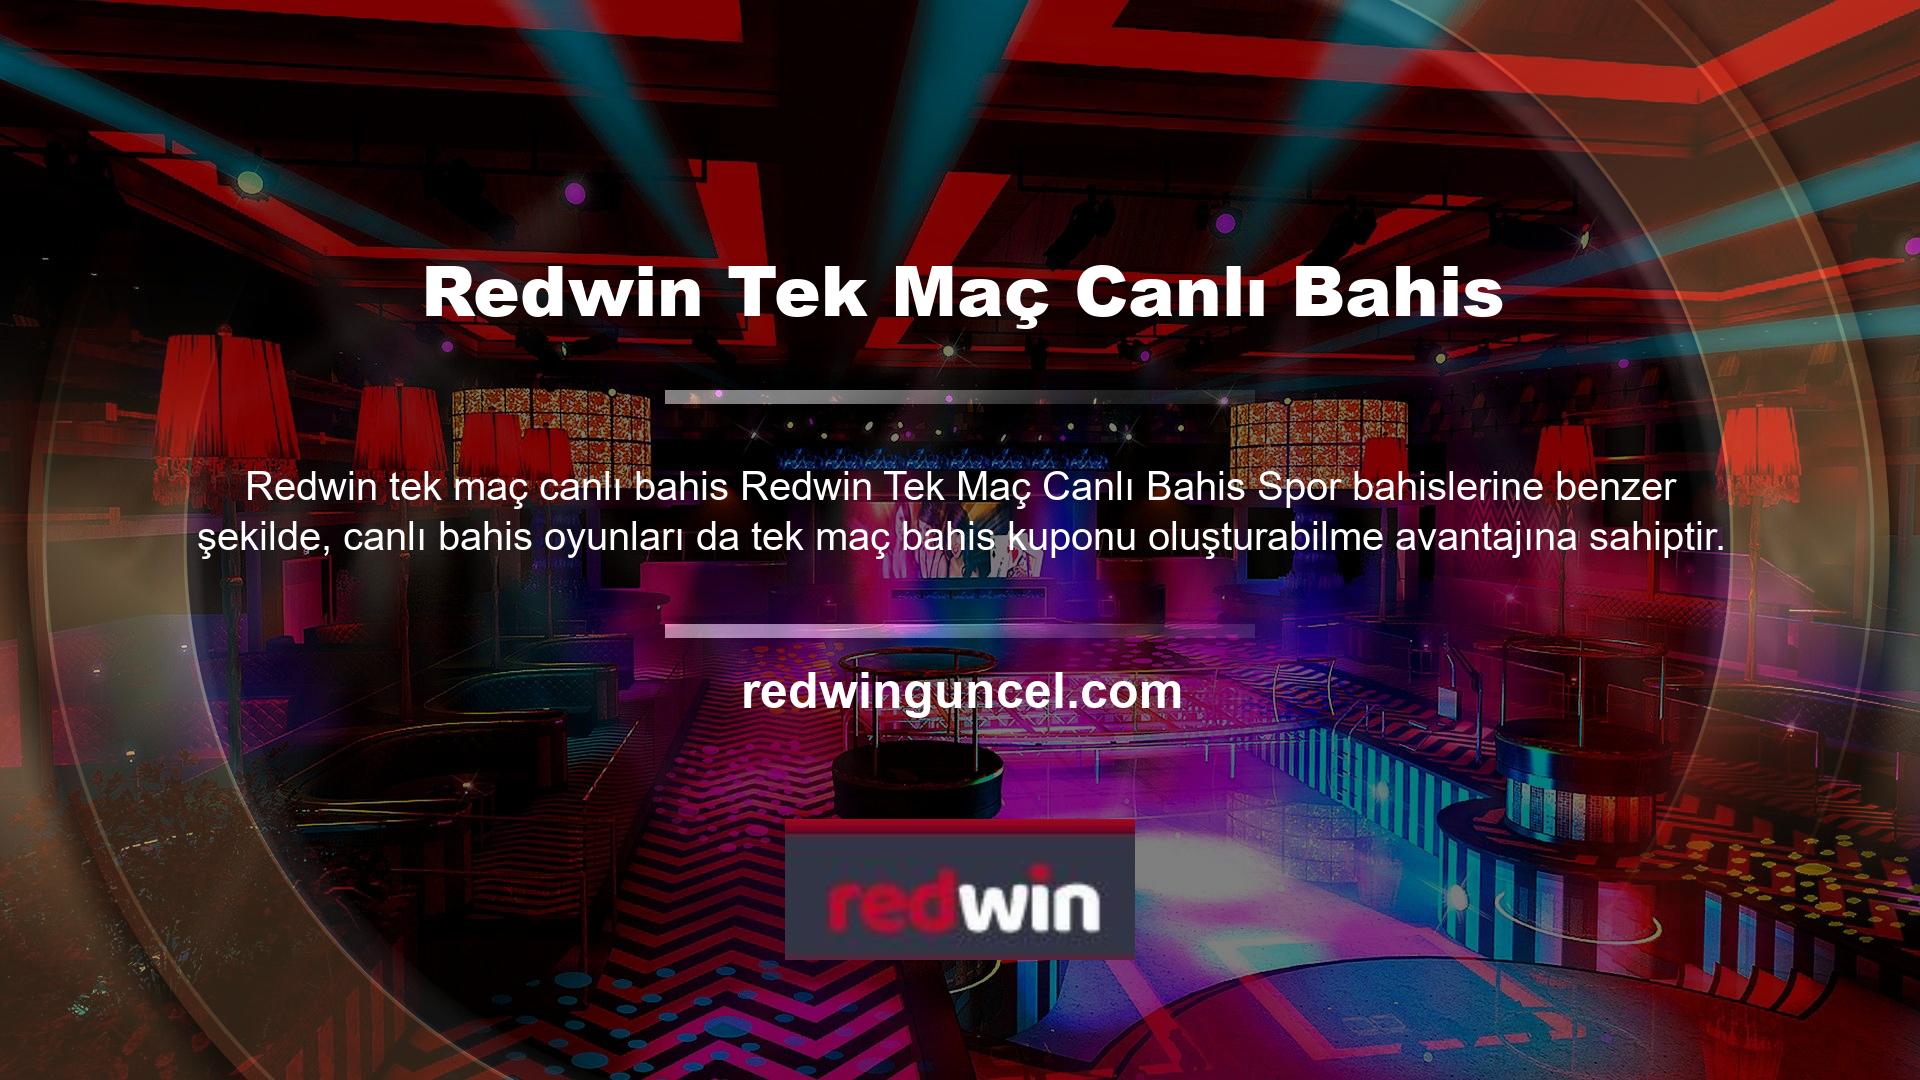 Tabi ki sizler de Redwin yeni adres web sitesini açıp gelip canlı bahis bölümüne göz atabilirsiniz